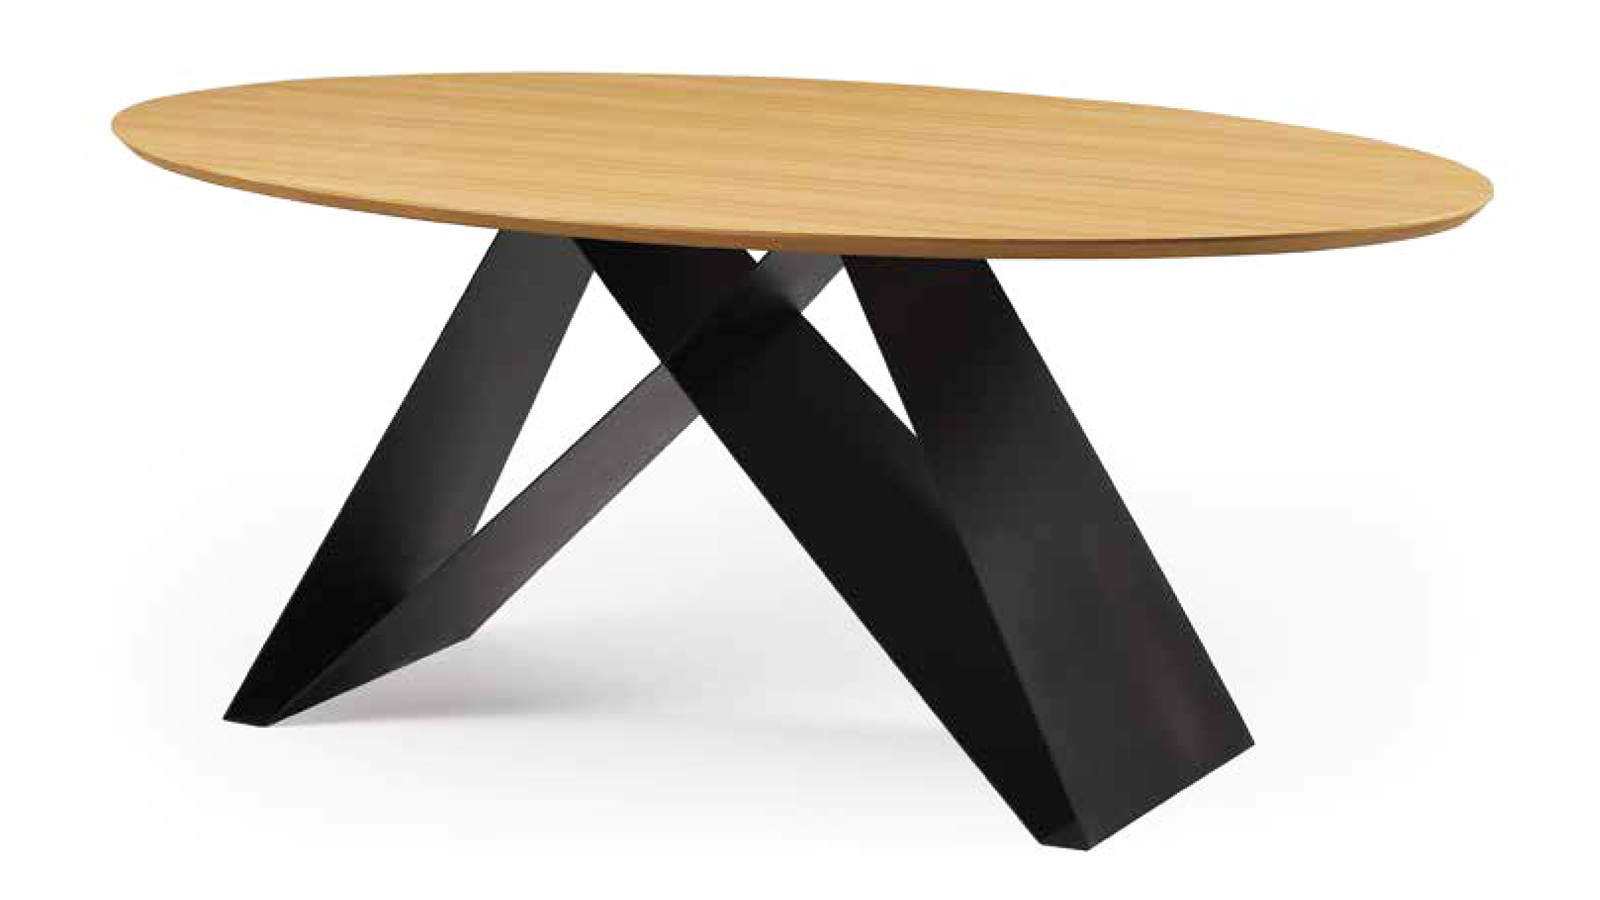 Patas de mesa de comedor de metal para mesa redonda y ovalada. Marco de mesa  de